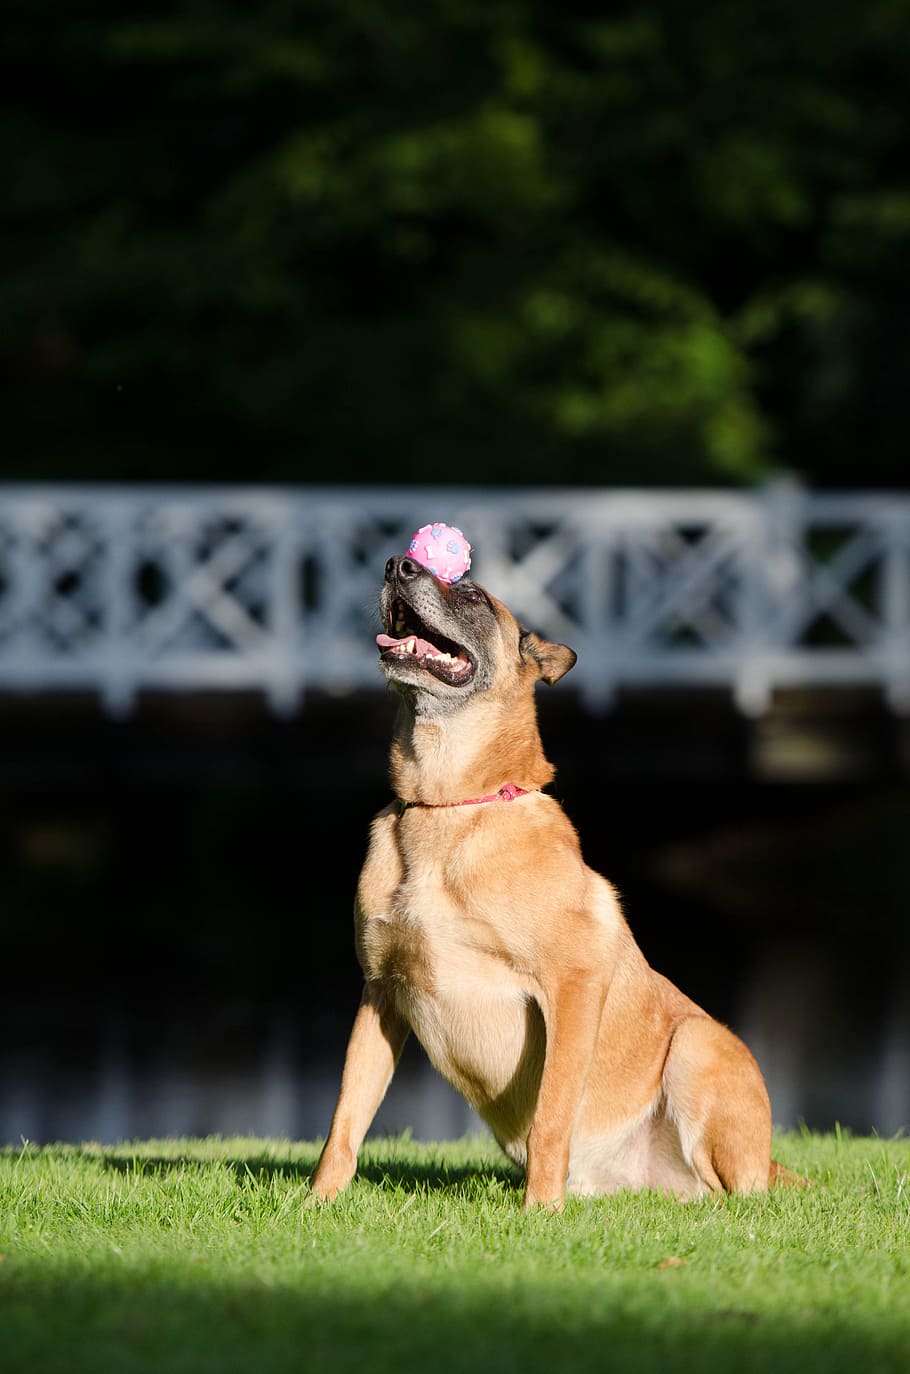 犬のトリック, バランス, 鼻の上のボール, マリノア, 犬のショートリック, ベルギーの羊飼い犬, トリック, 夏, 面白い, 注目